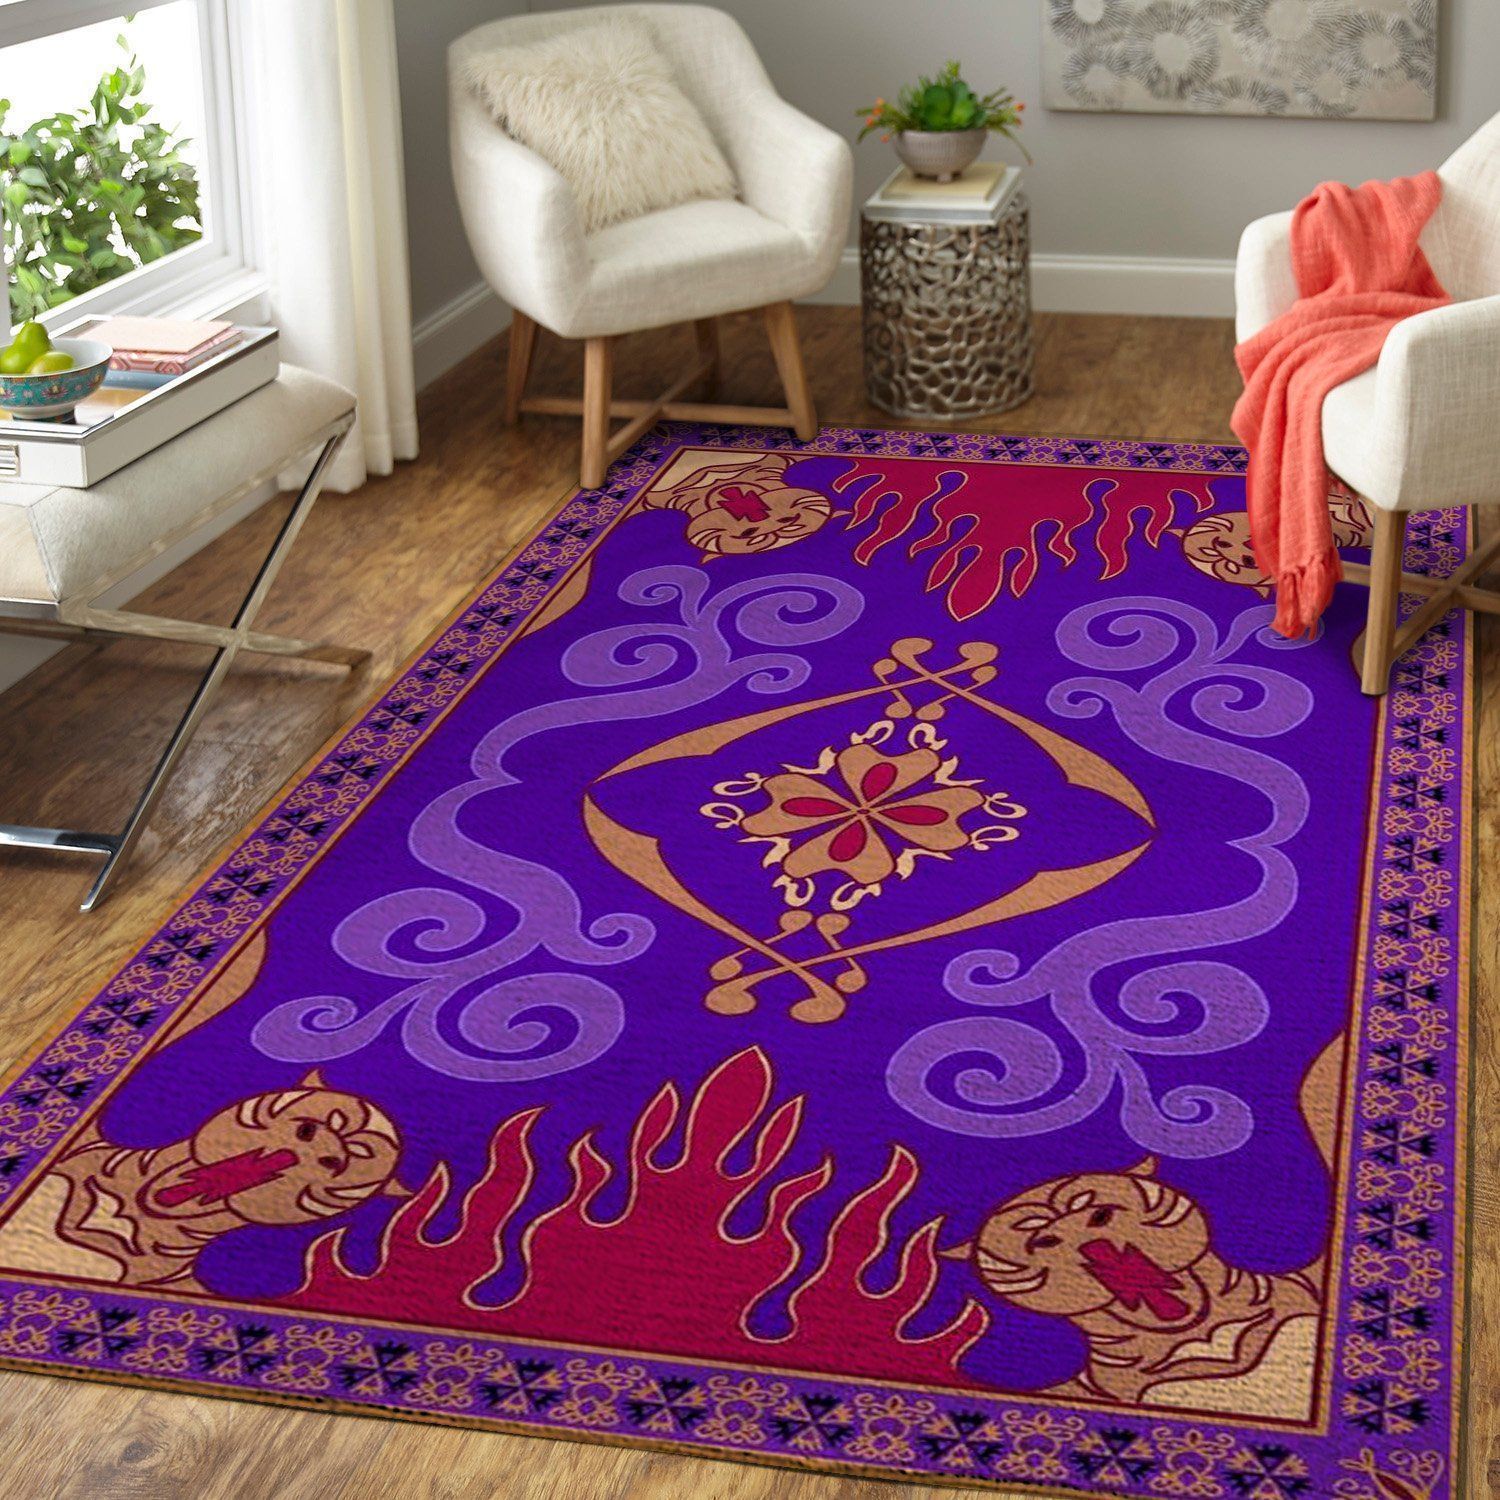 Disney Aladdin S Magic Carpet Area Rug Custom Size And Prin